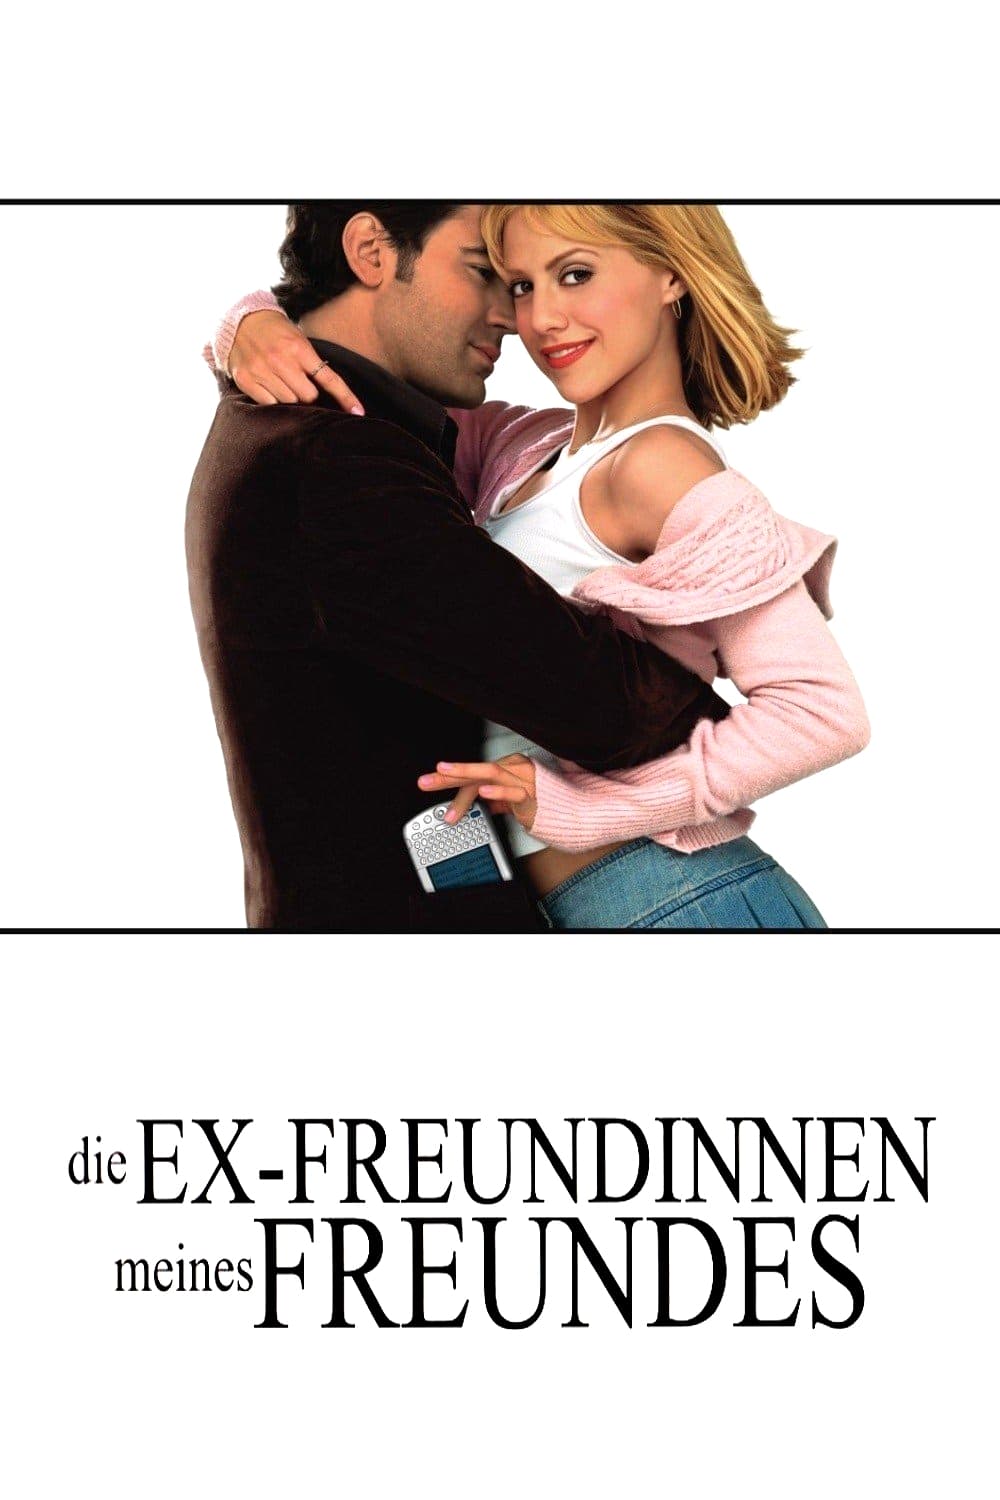 Plakat von "Die Ex-Freundinnen meines Freundes"